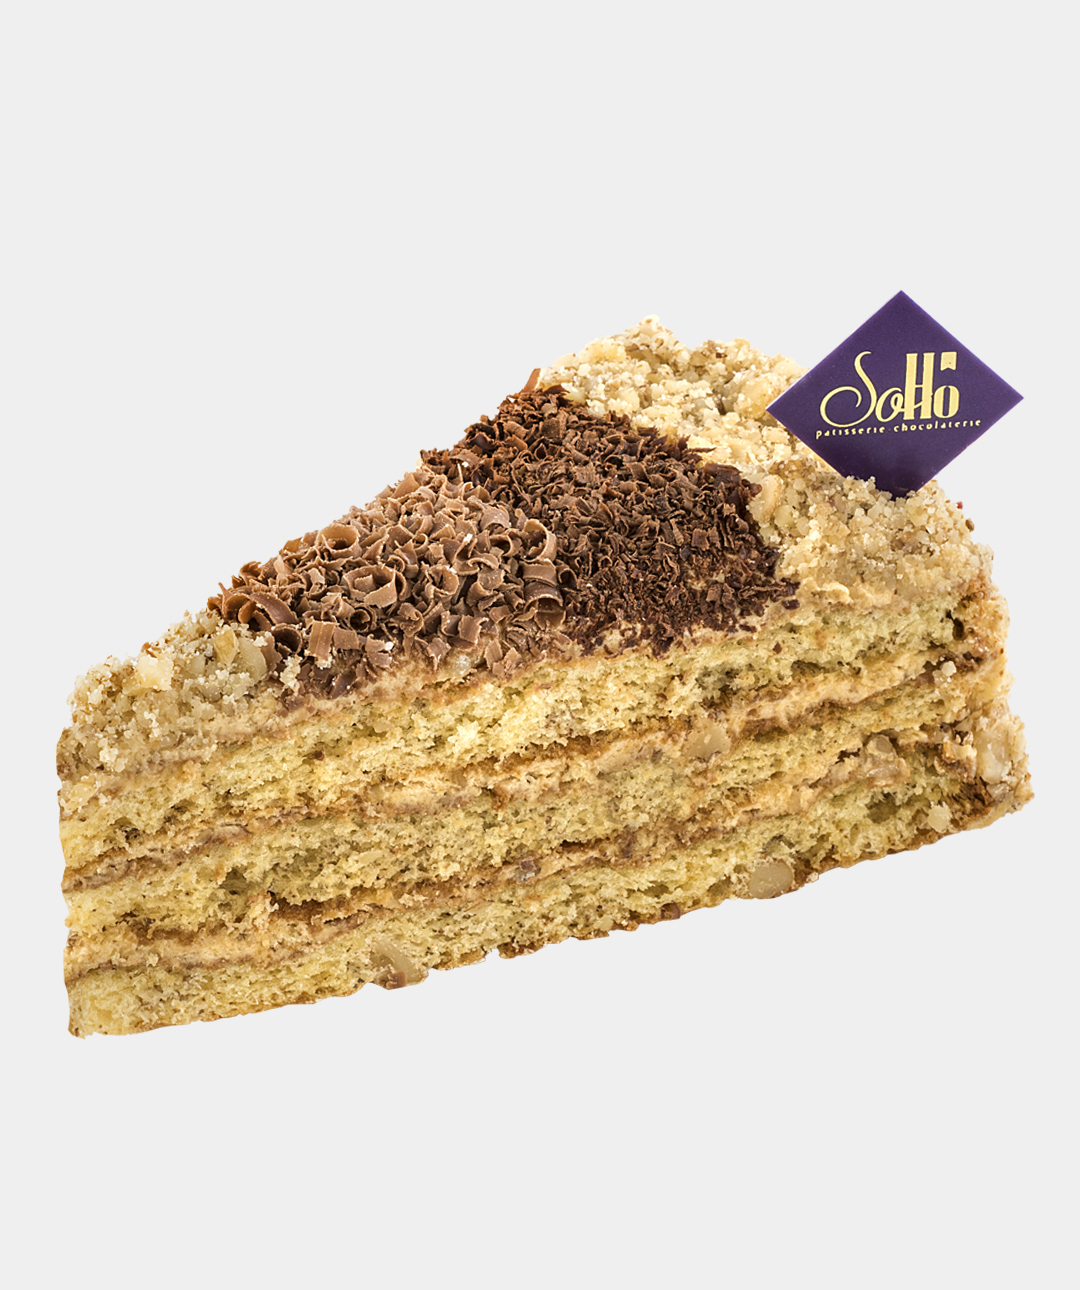 Cake «Soho» Ideal, big